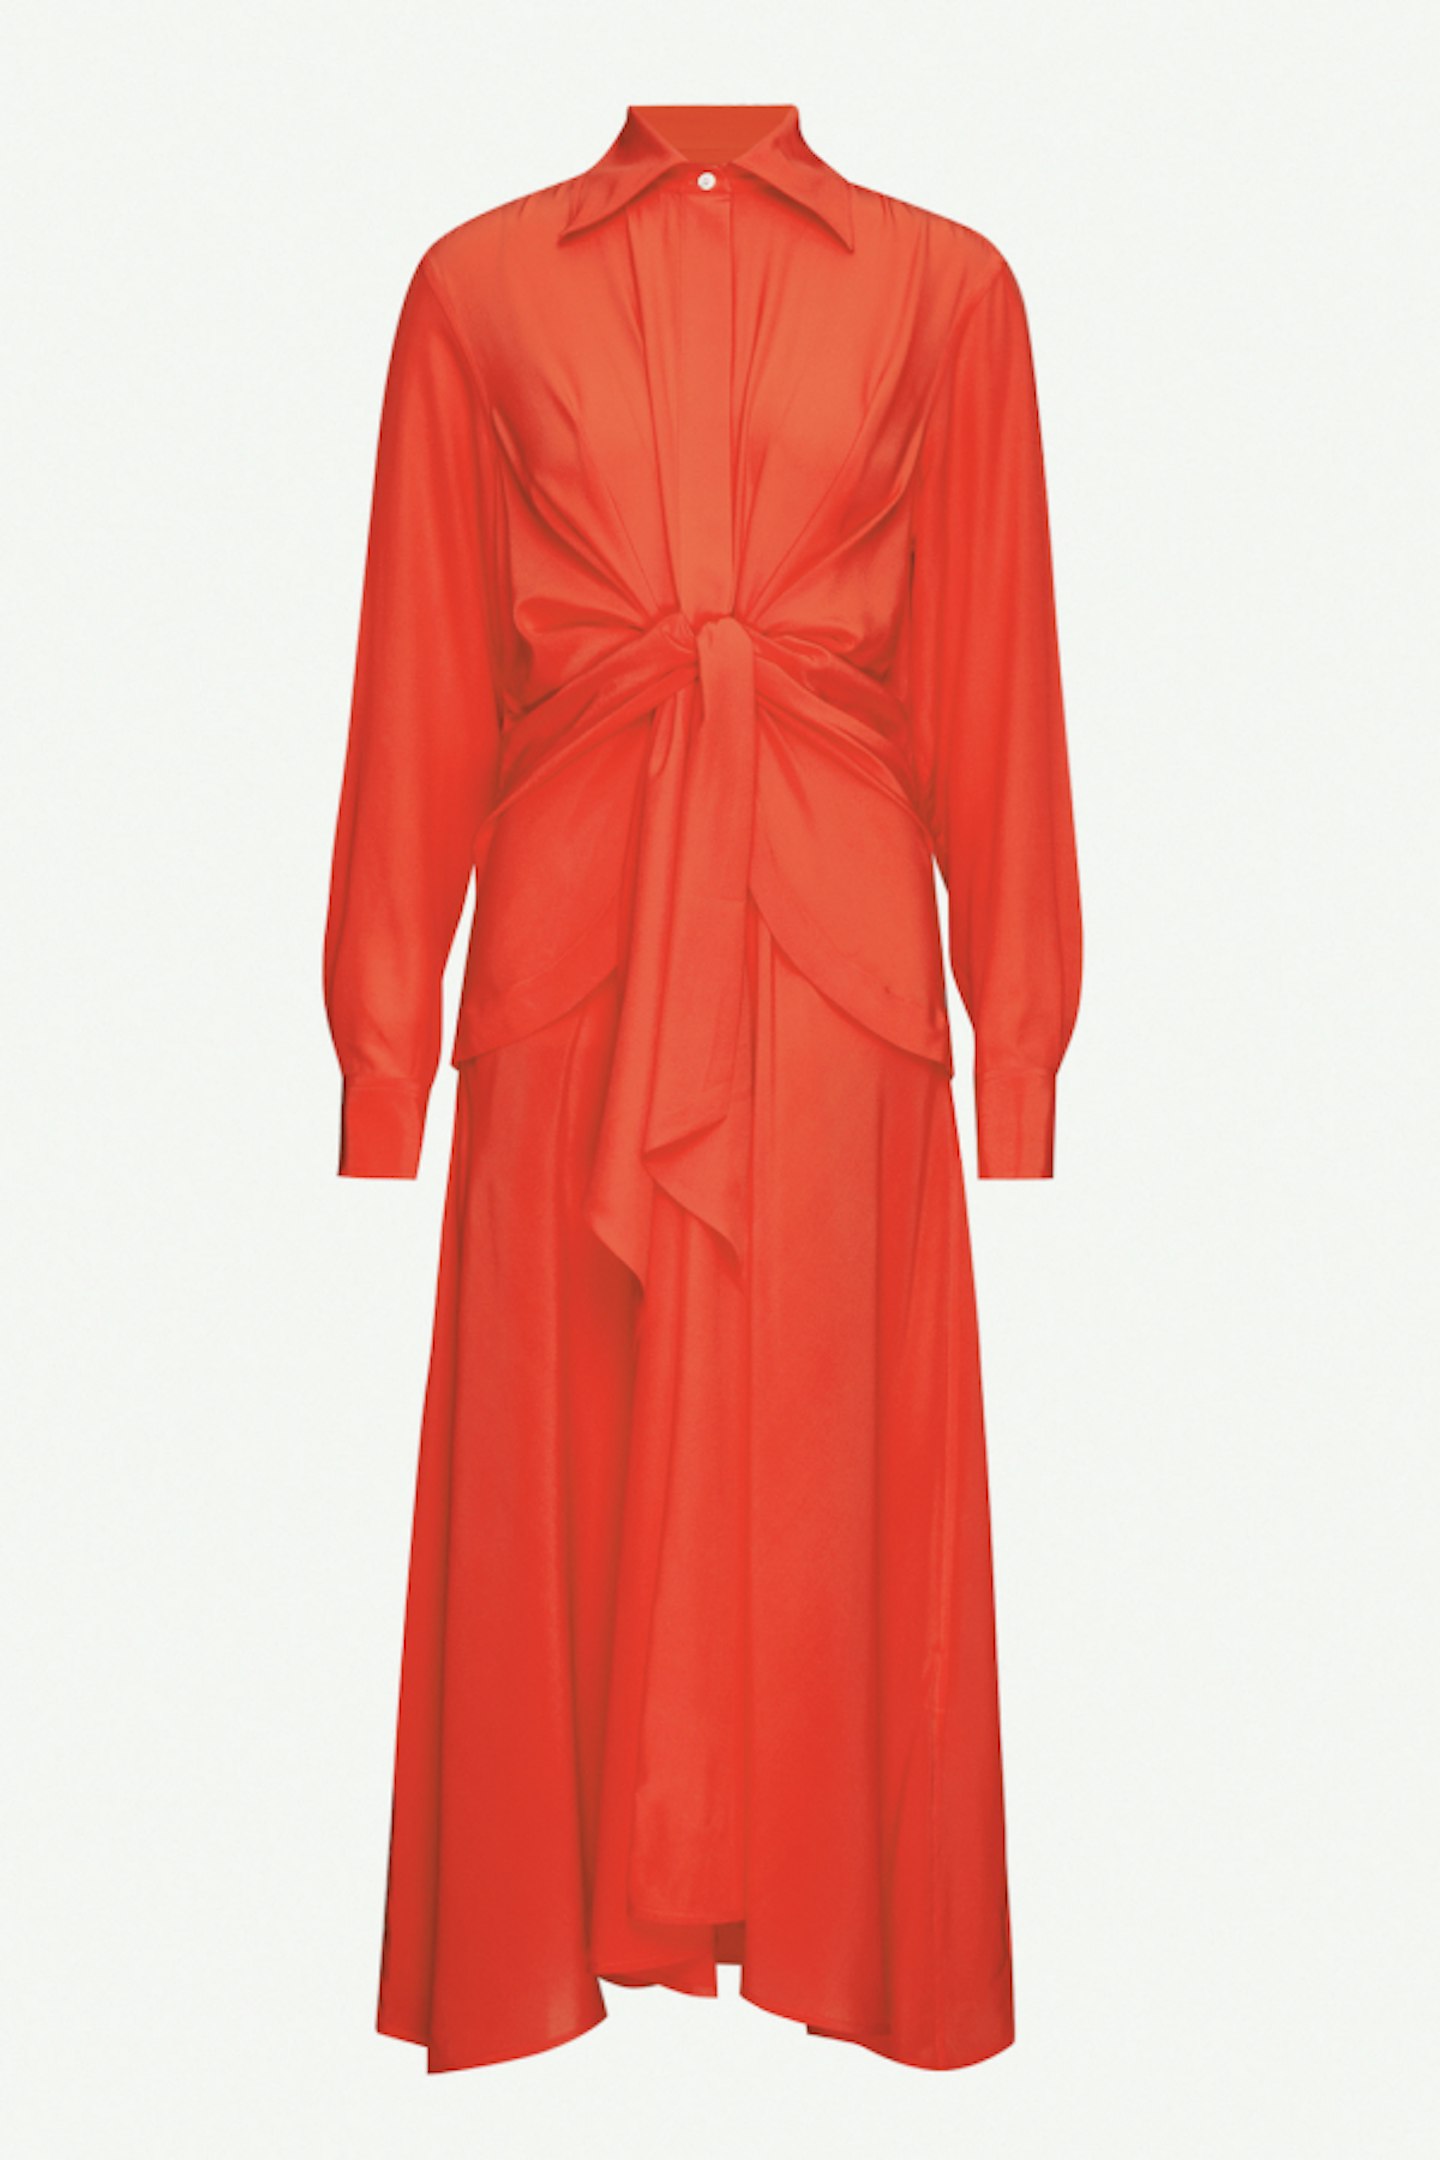 Victoria Beckham, Gathered Silk Dress, Rent From £88